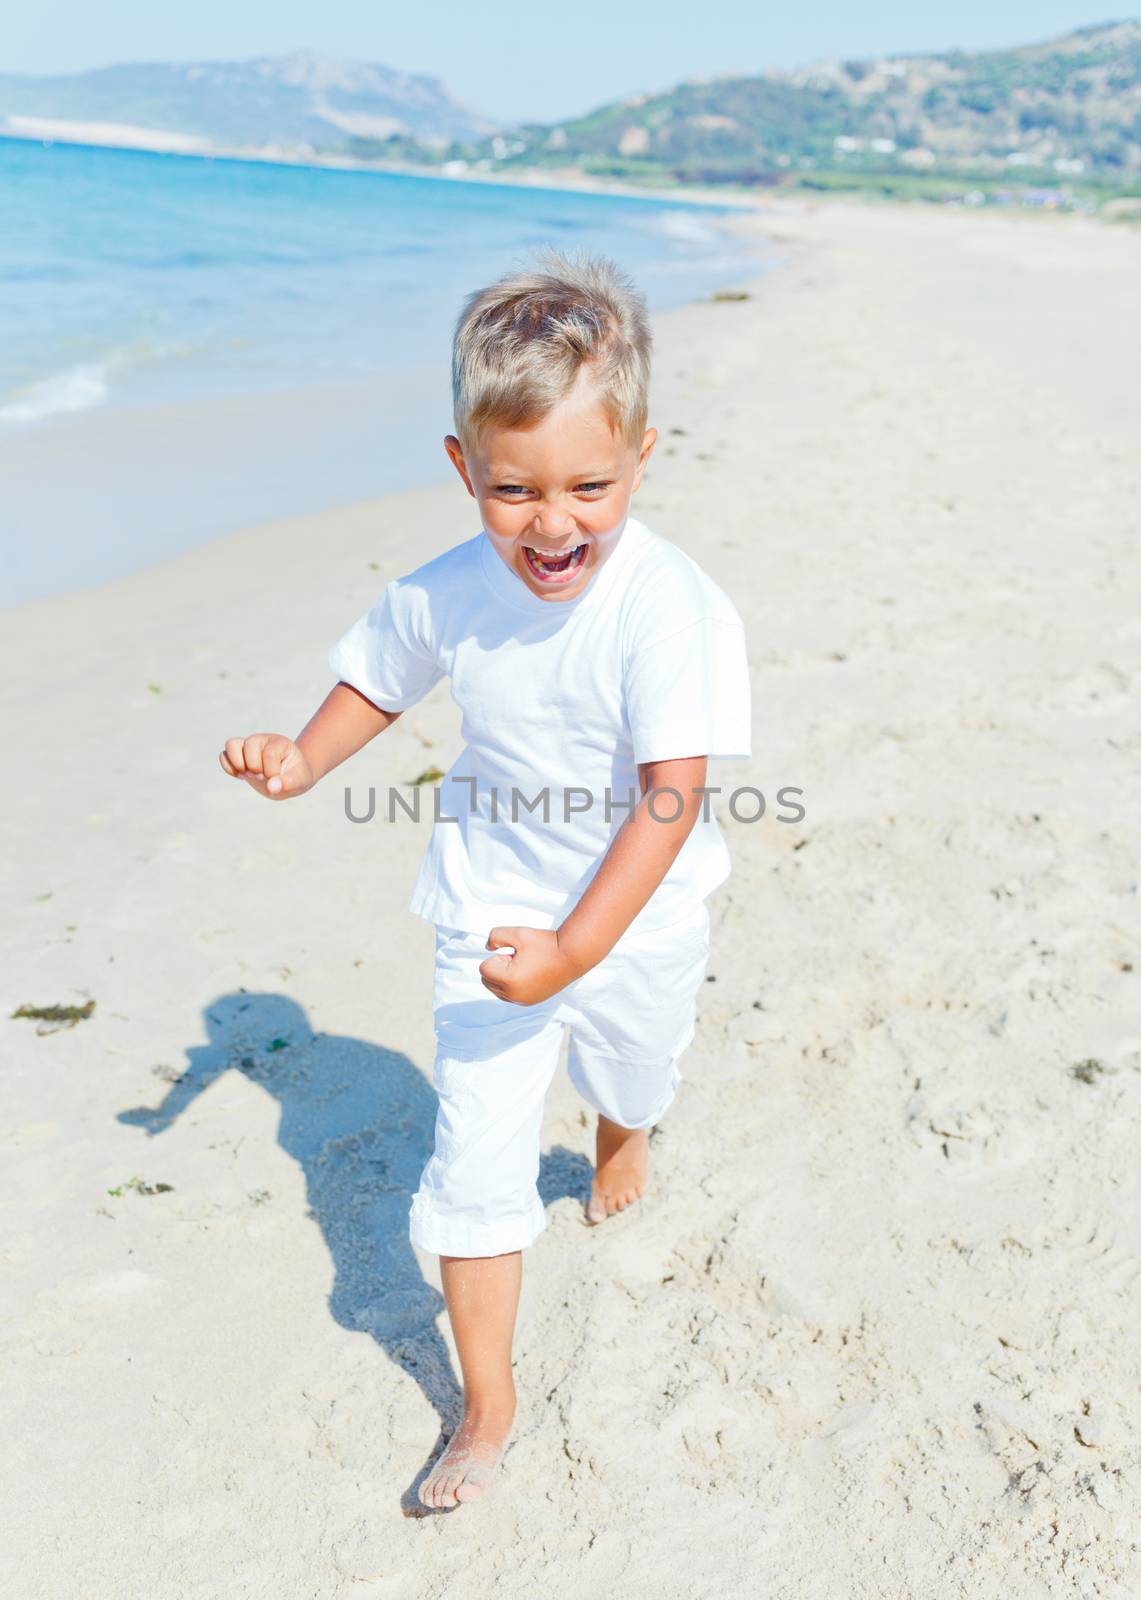 Smiling cute boy runs along the tropical beach.